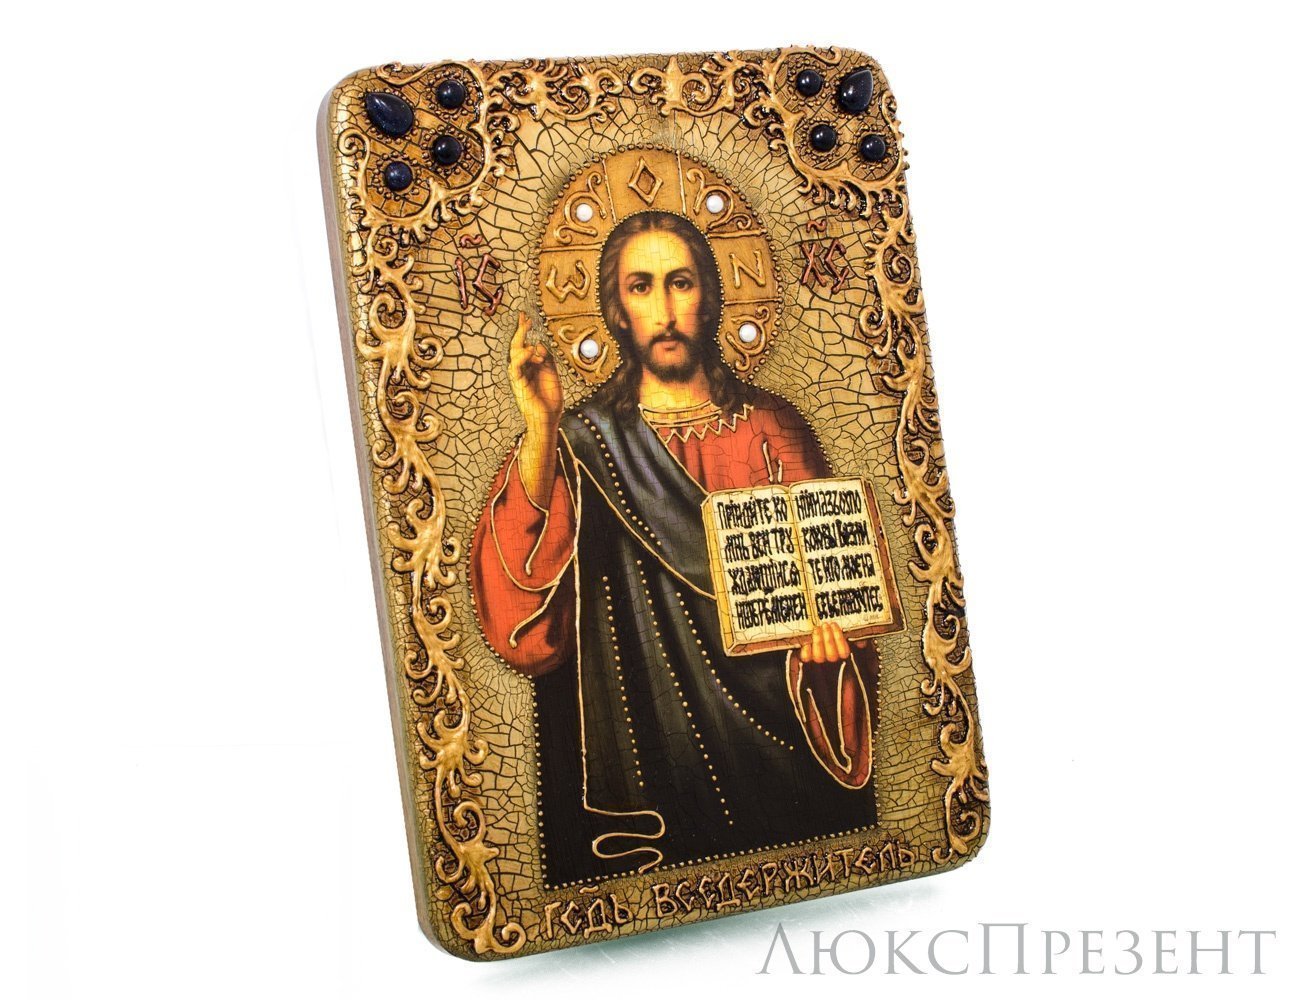 Подарочная икона "Господа Иисуса Христа"